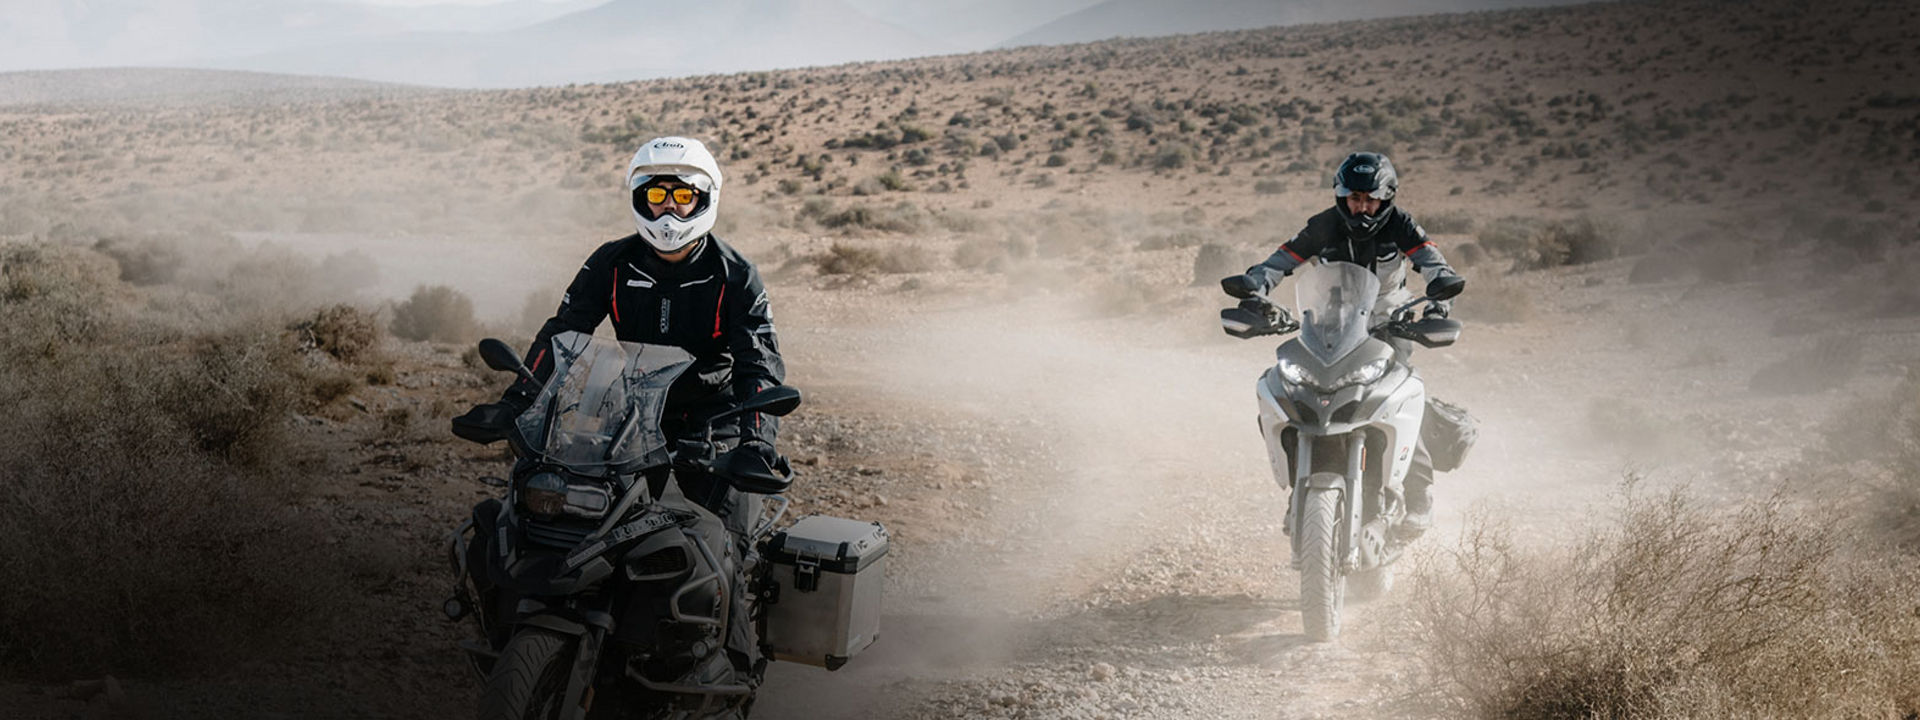 Obrázek ukazuje dva motocyklisty, kteří používají Adventure pneumatiky Bridgestone k prozkoumání pouště na motocyklu.